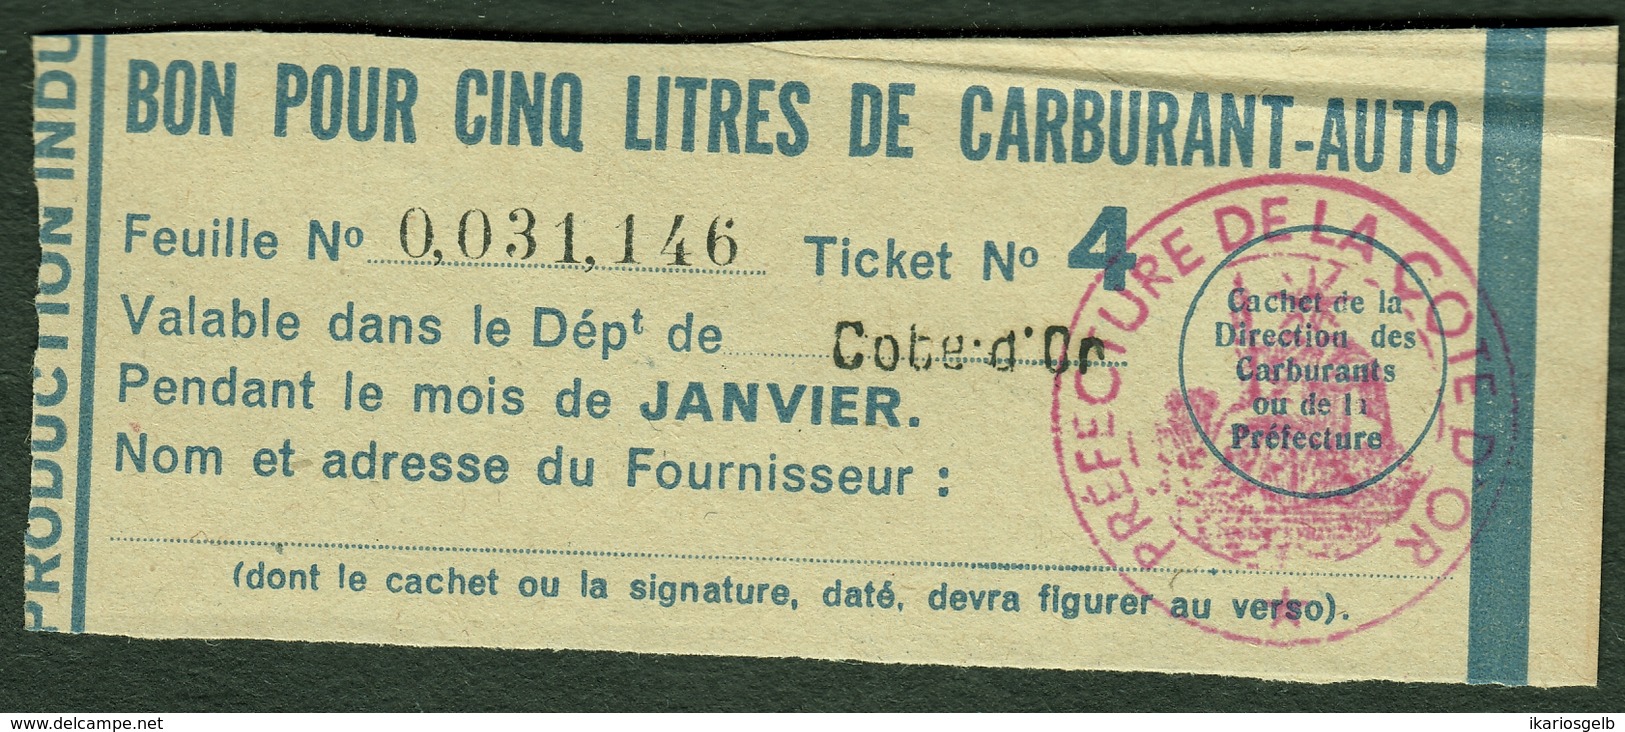 Coupon D'achat 1944 Dijon ( Cote-de-Or ) " Bon Pour Cinq Litre D' Carburant Auto " Carte Ravitaillement G - Fictifs & Spécimens